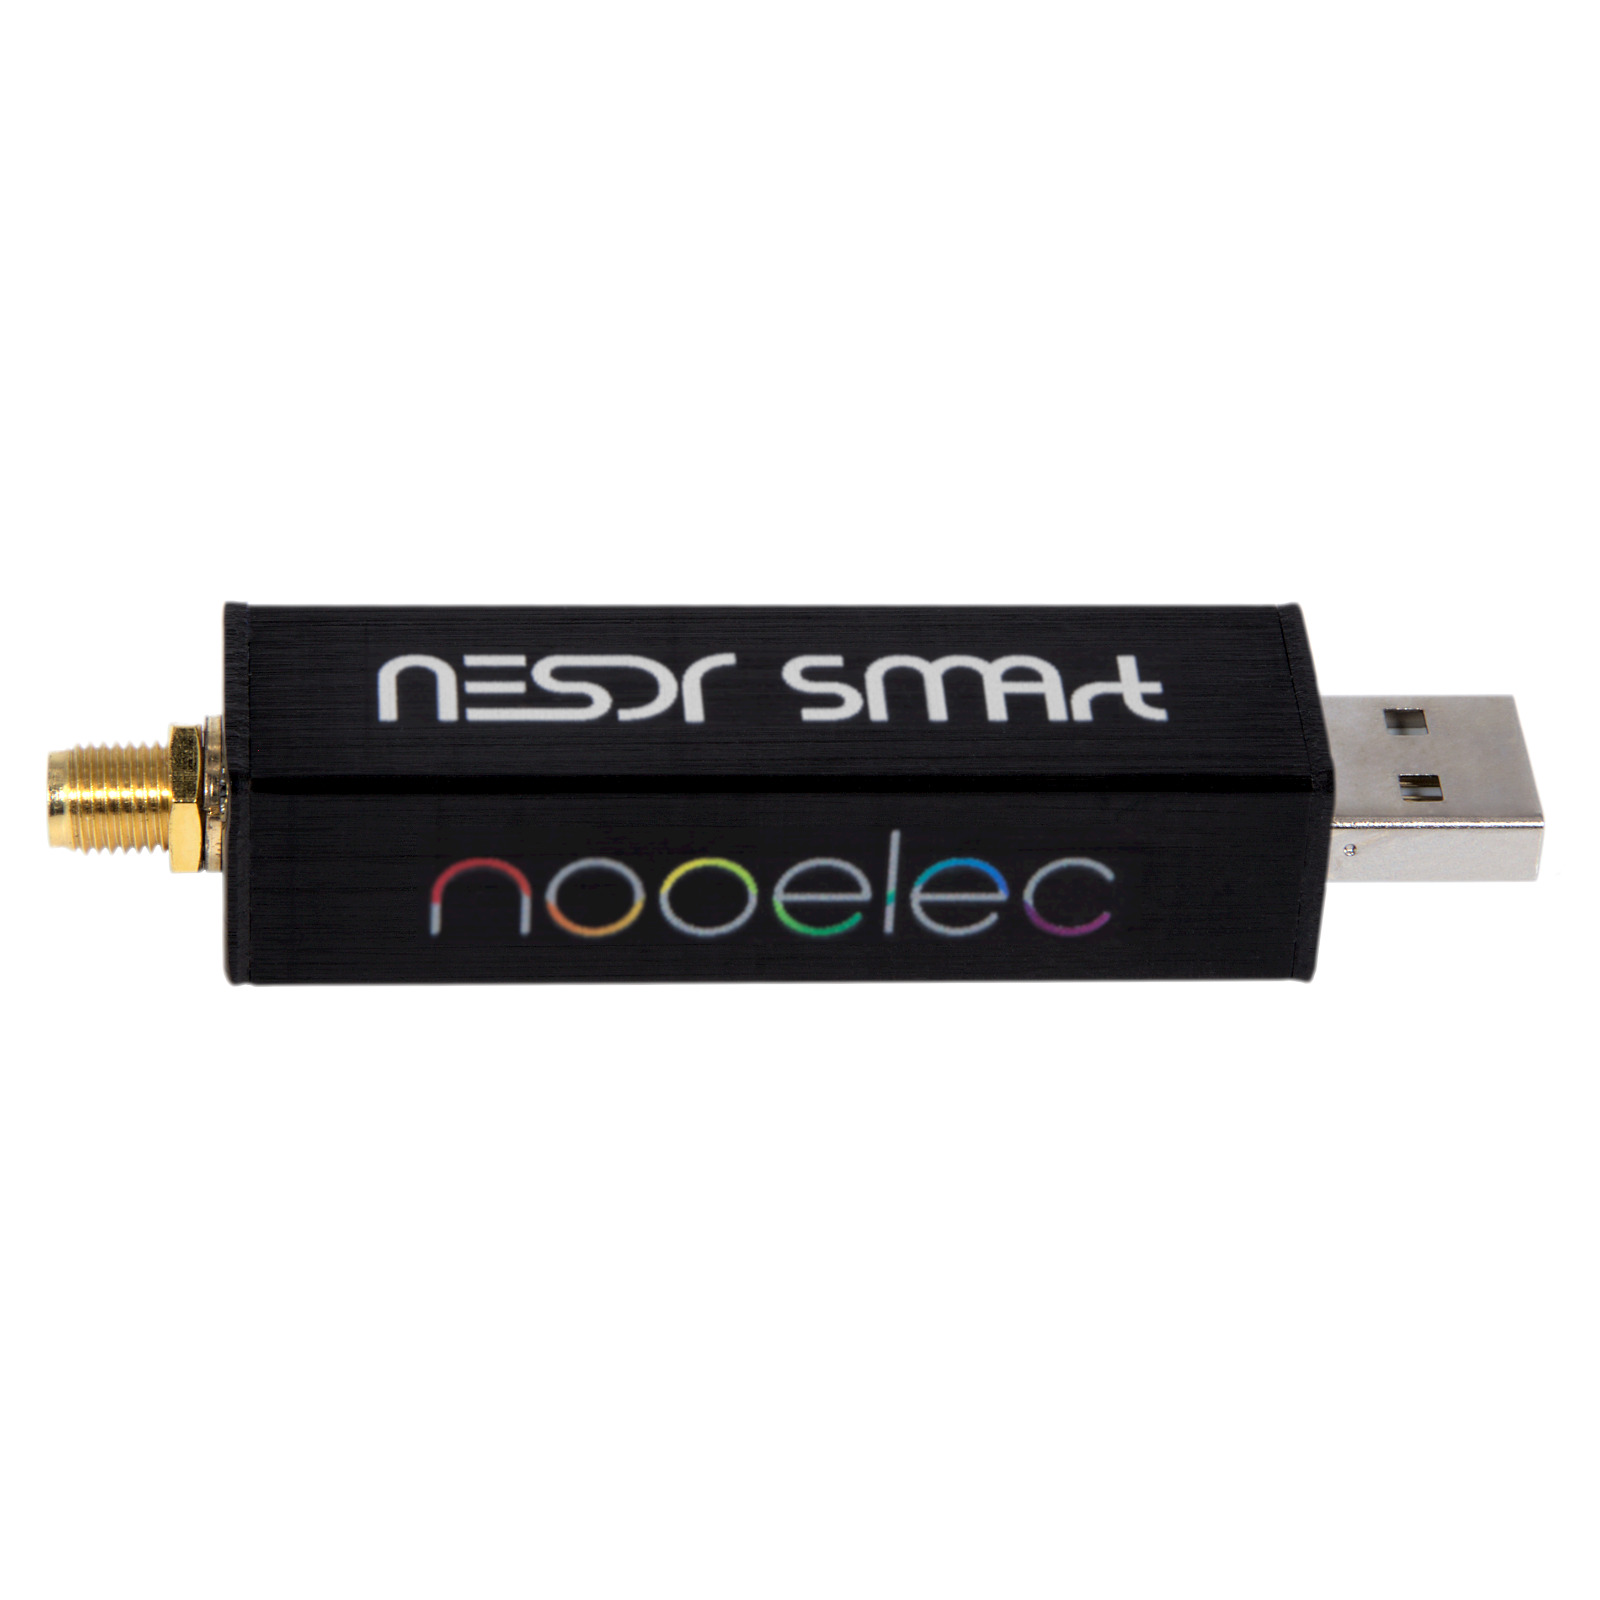 Nooelec RTL-SDR v5 SDR - NESDR SMArt HF/VHF/UHF (100kHz-1.75GHz) USB Radio USA